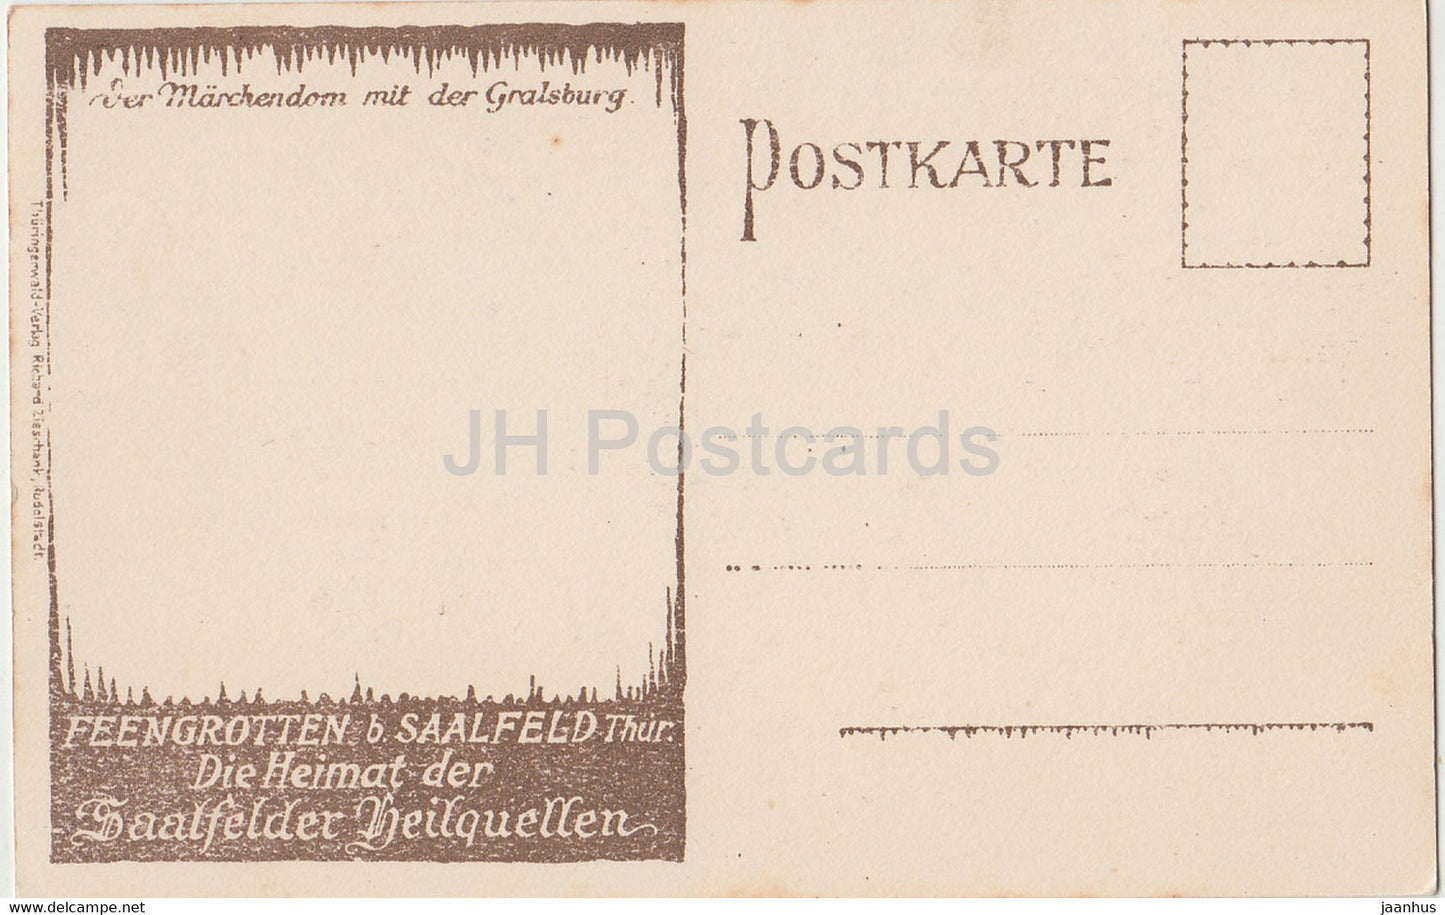 Feengrotten b Saalfeld Thur - Die Heimat der Saalfelder Heilquellen - Marchendom - Höhle alte Postkarte - Deutschland - unbenutzt